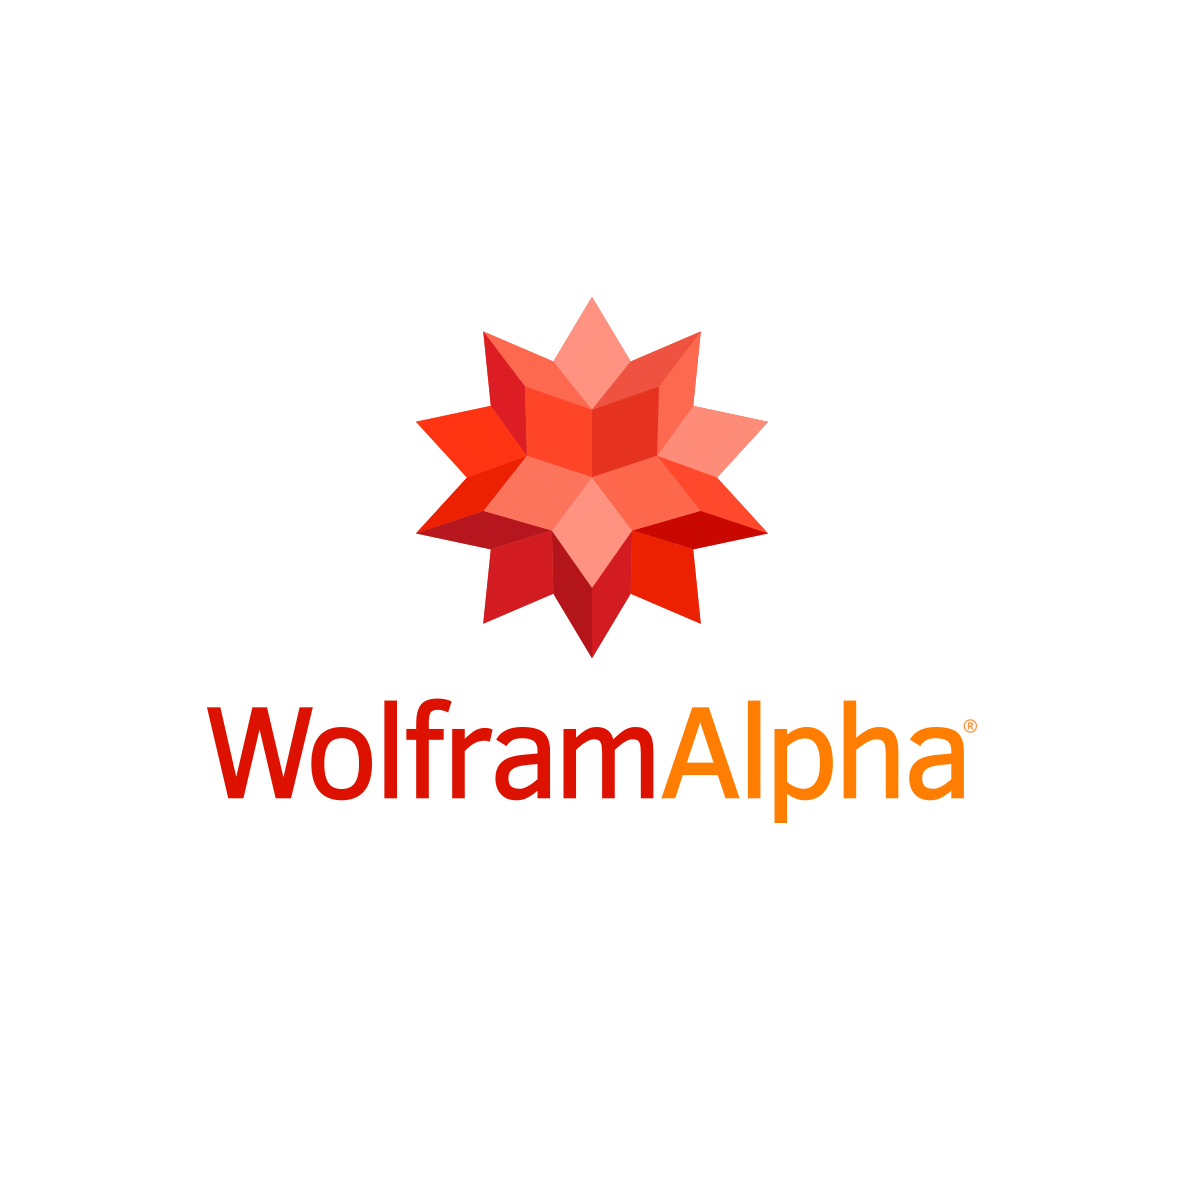 0.004 beard seconds - Wolfram|Alpha